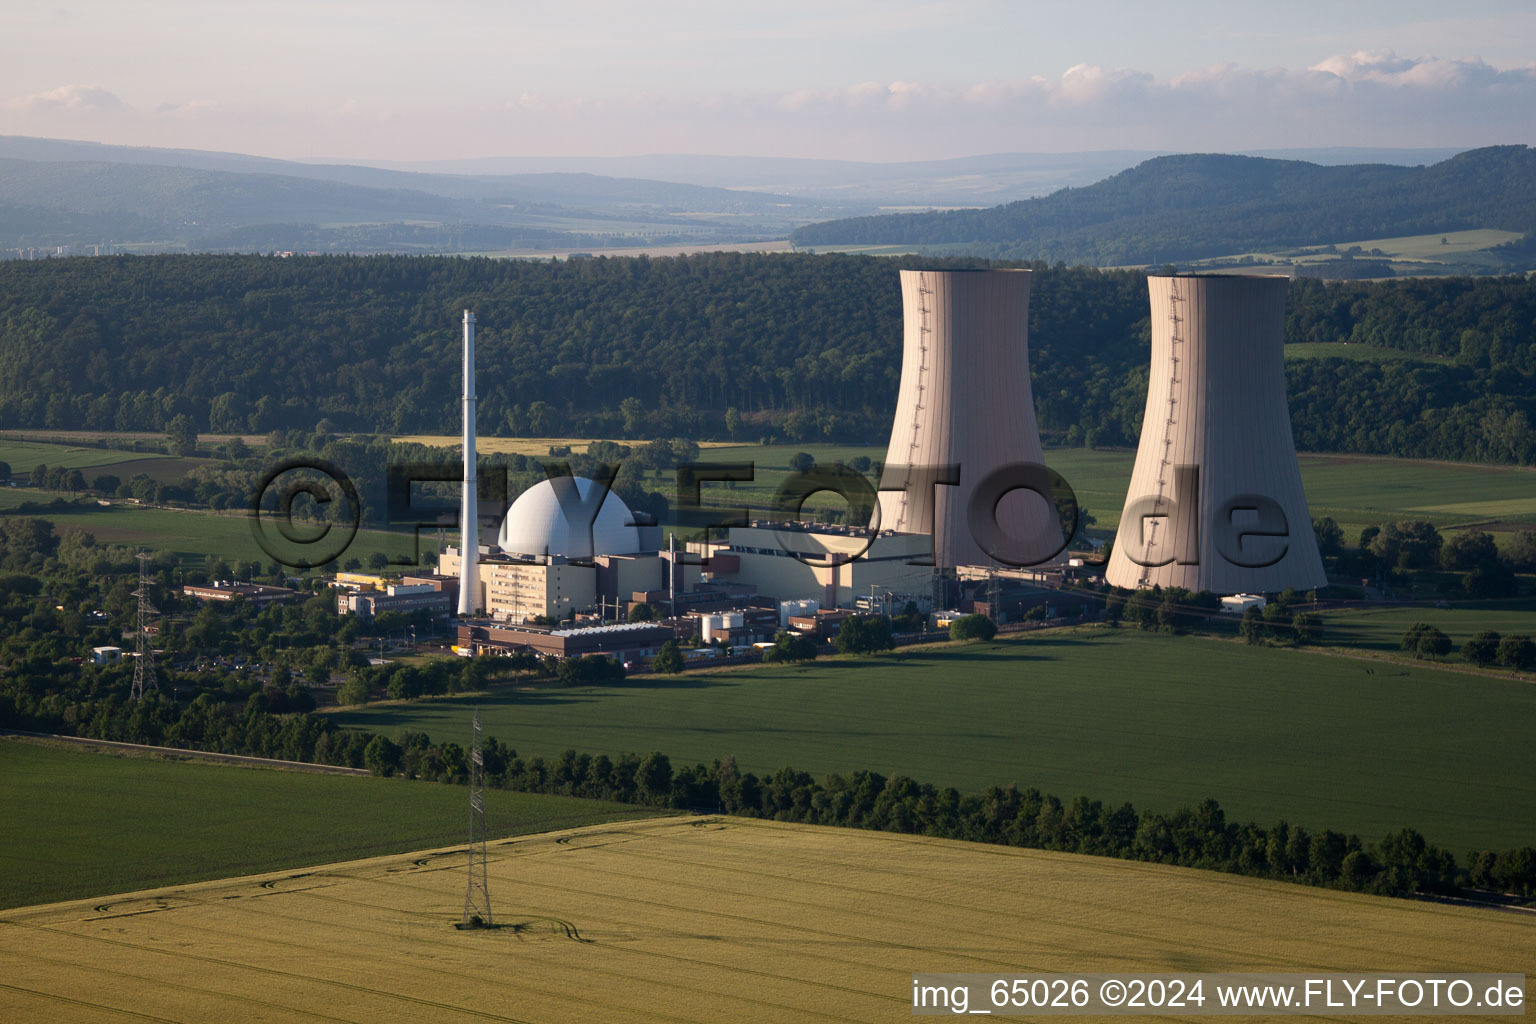 Schrägluftbild von Reaktorblöcke, Kühlturmbauwerke und Anlagen des AKW - KKW Atomkraftwerk - Kernkraftwerk Kernkraftwerk Grohnde an der Weser in Emmerthal im Bundesland Niedersachsen, Deutschland